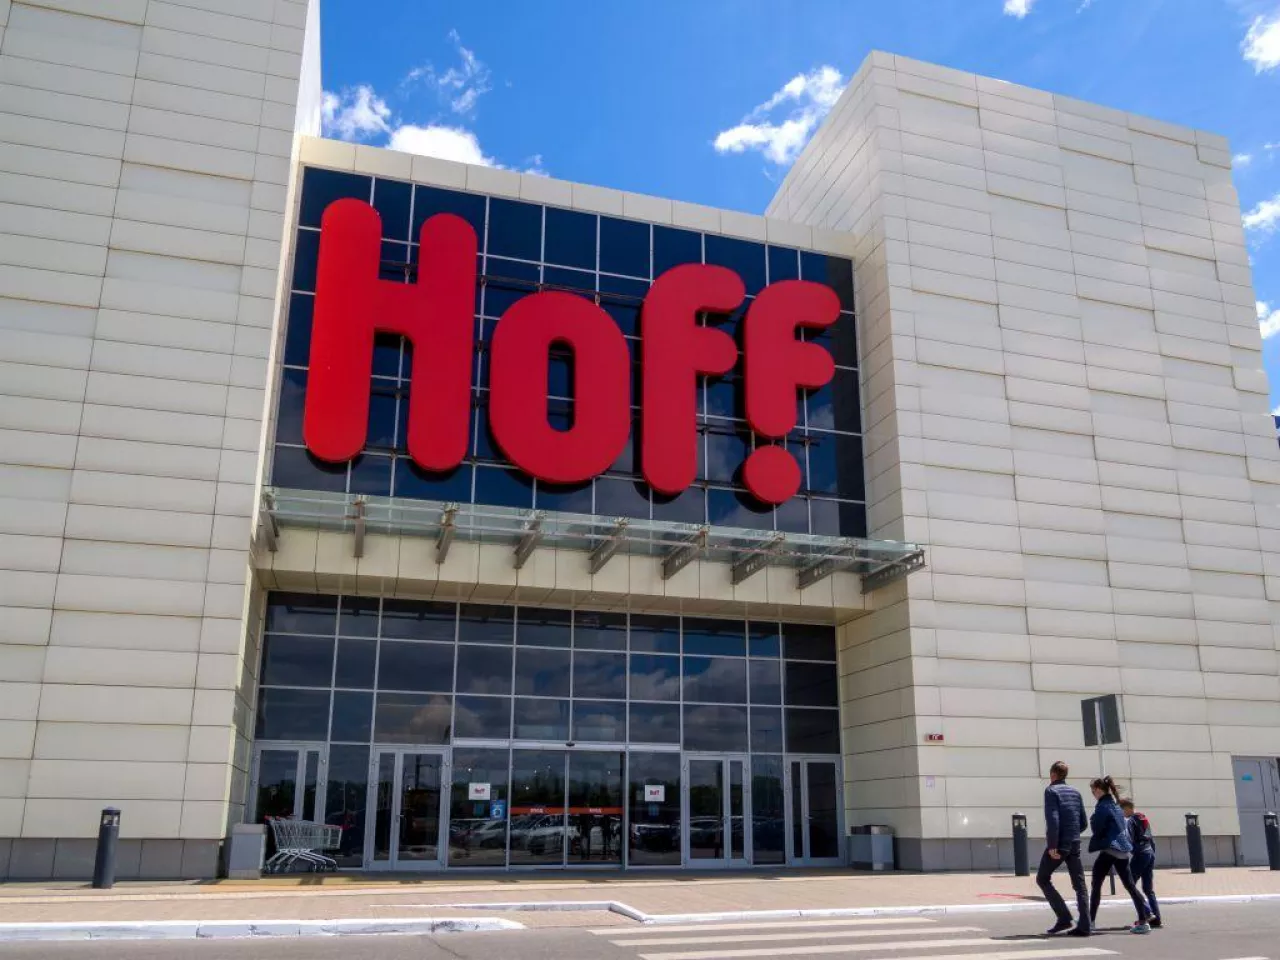 Sieć hipermarketów meblowych Hoff to jeden z kandydatów do przejęcia biznesu firmy Ikea w Rosji (fot. Schutterstock.com)